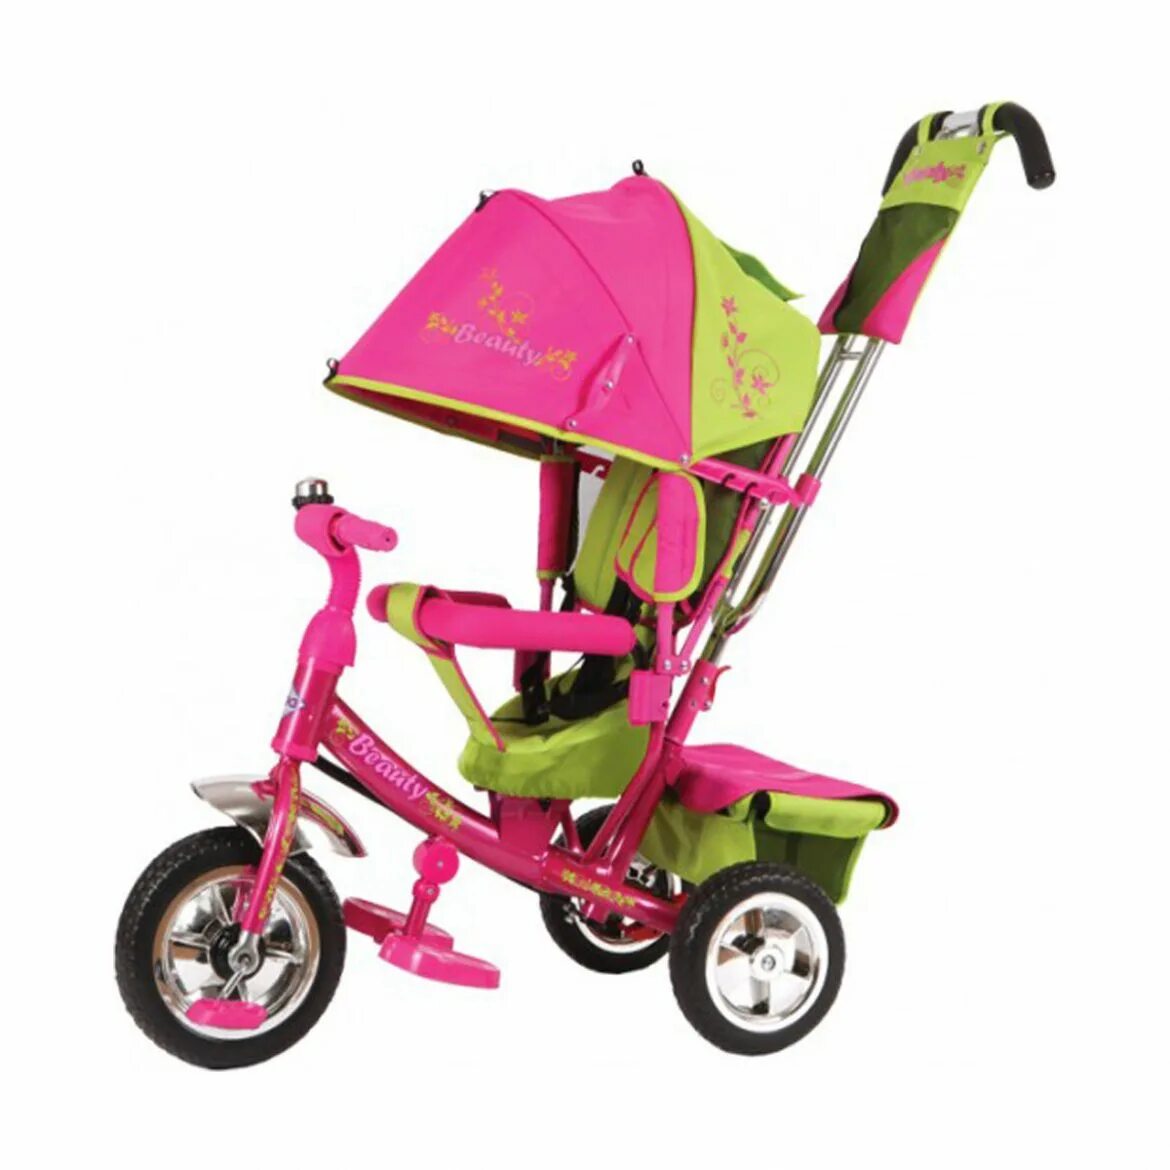 Велосипед с ручкой. Трехколесный велосипед Beauty ba2. Трехколесный велосипед Beauty b2mp розовый. Трехколесный велосипед Toyz Derby. Трехколесный велосипед Moby Kids Cosmo 2.